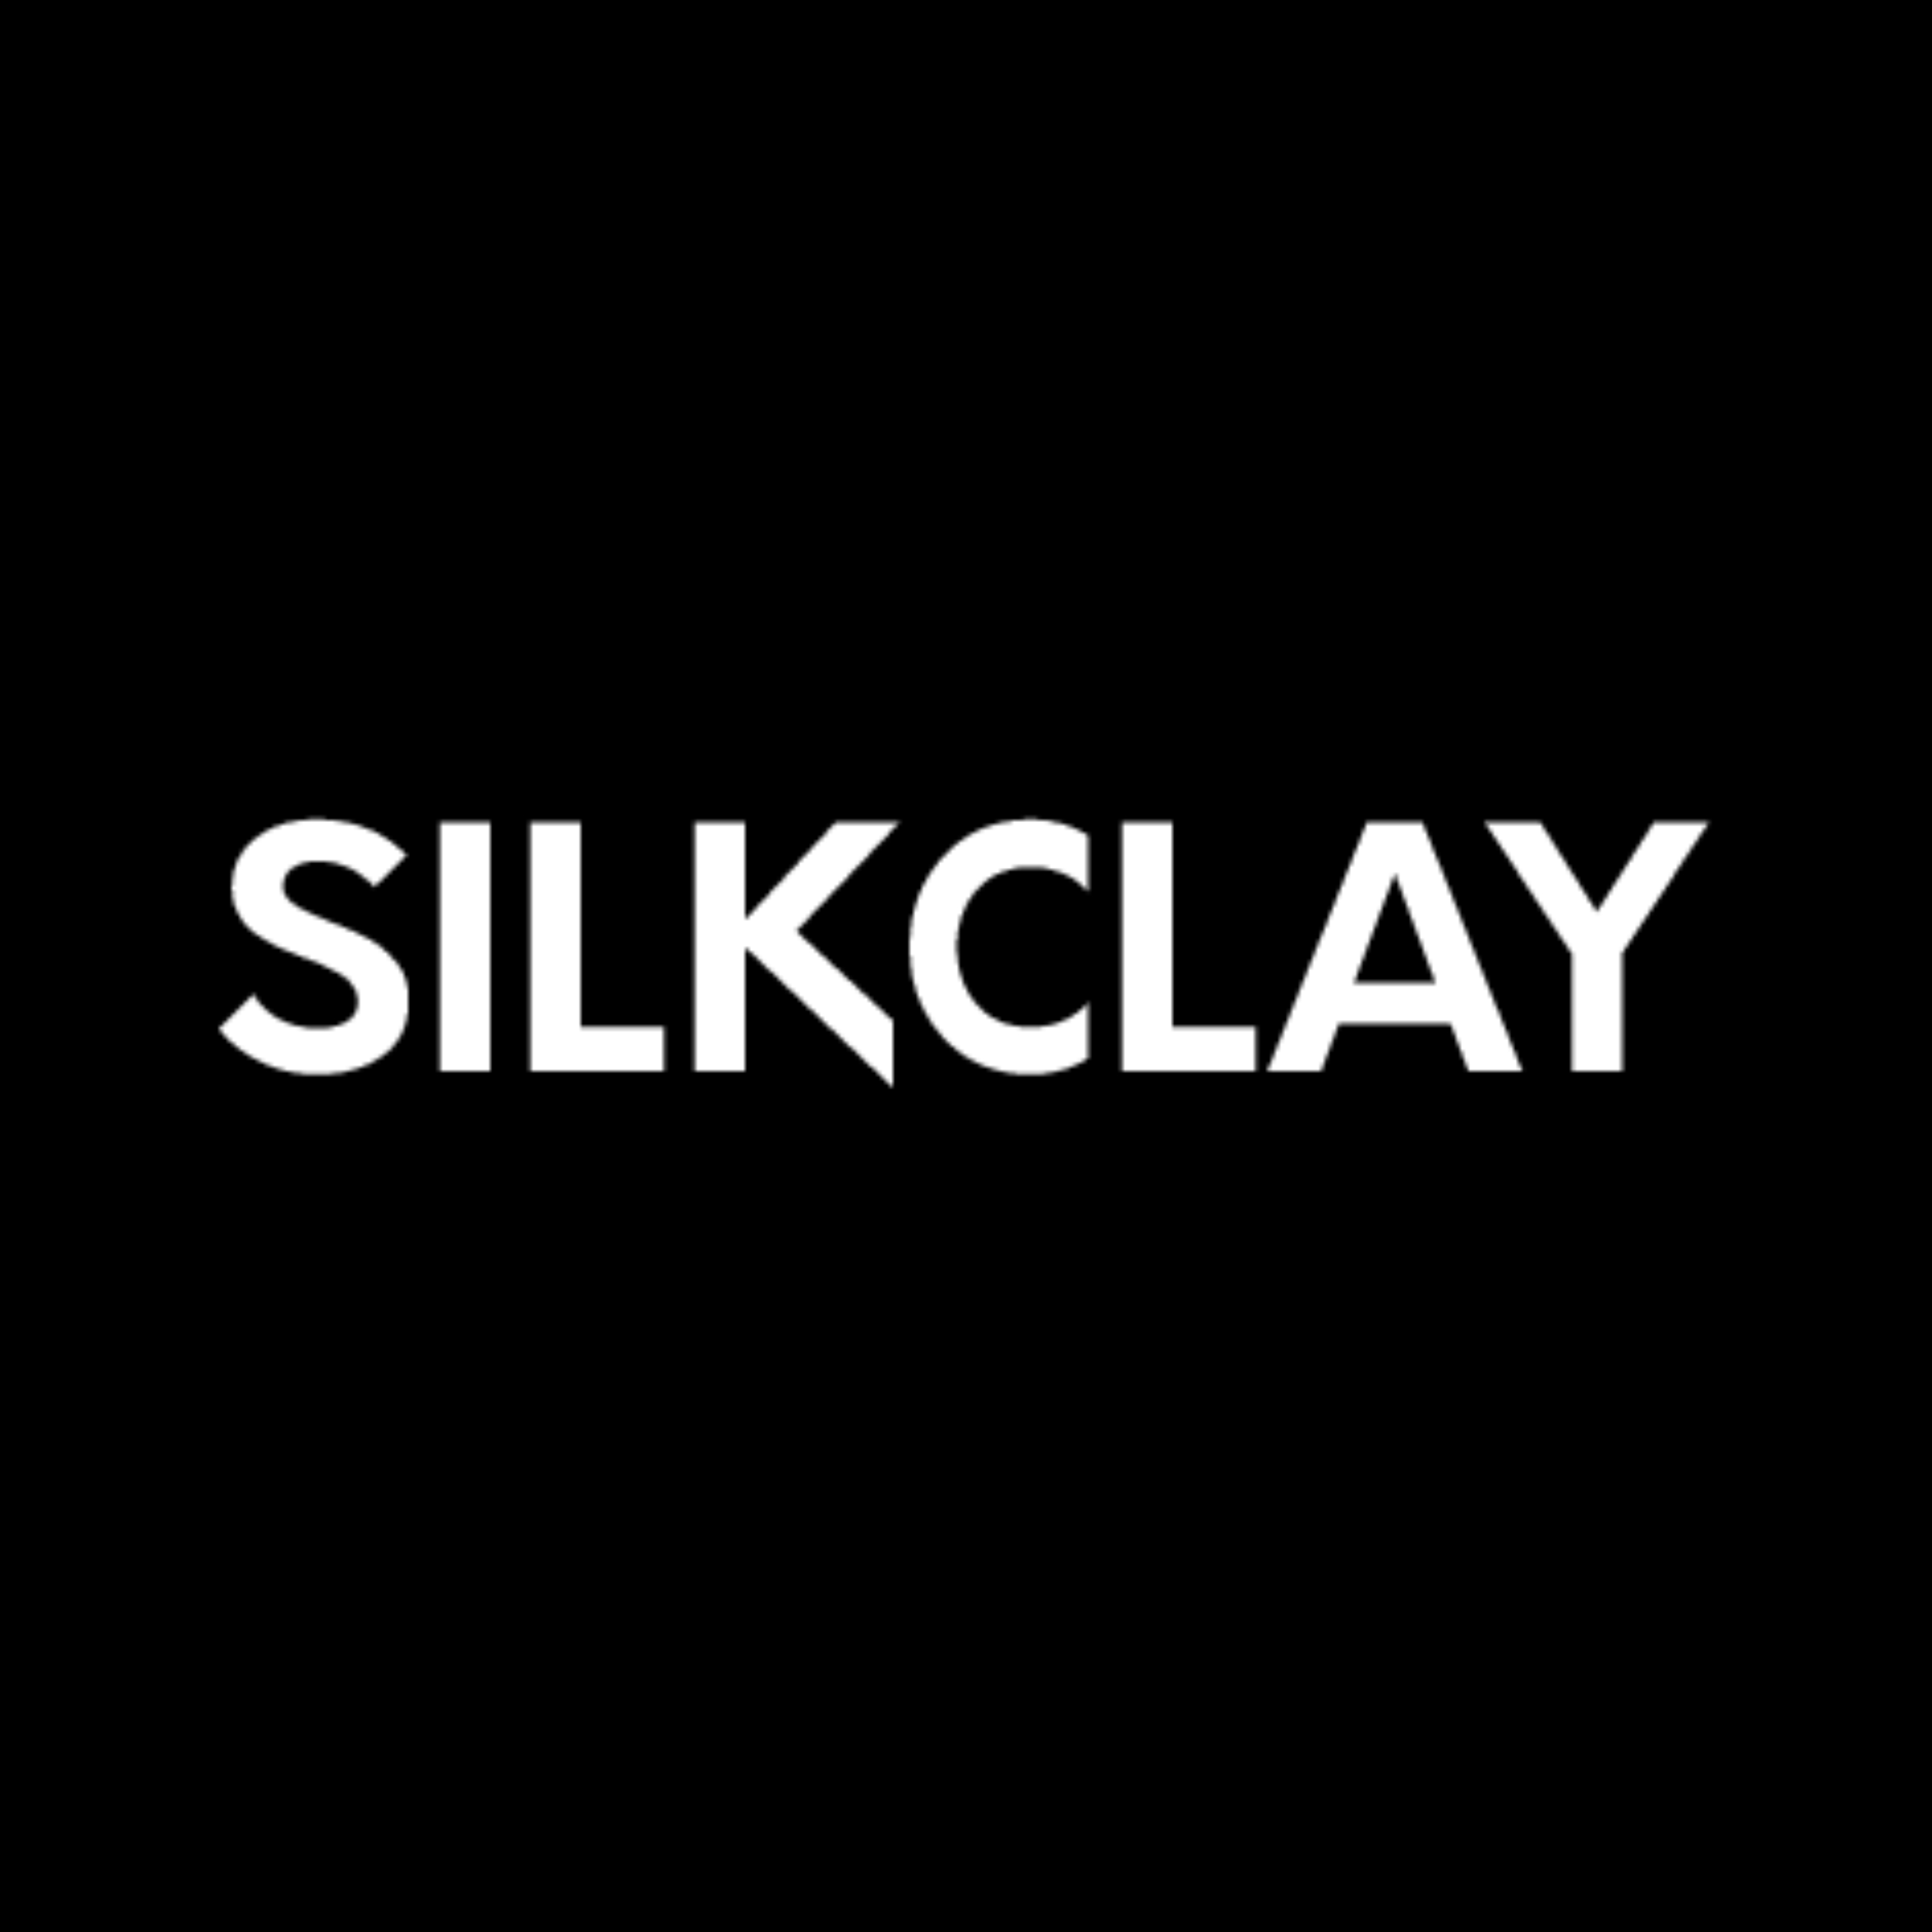 Silkclay